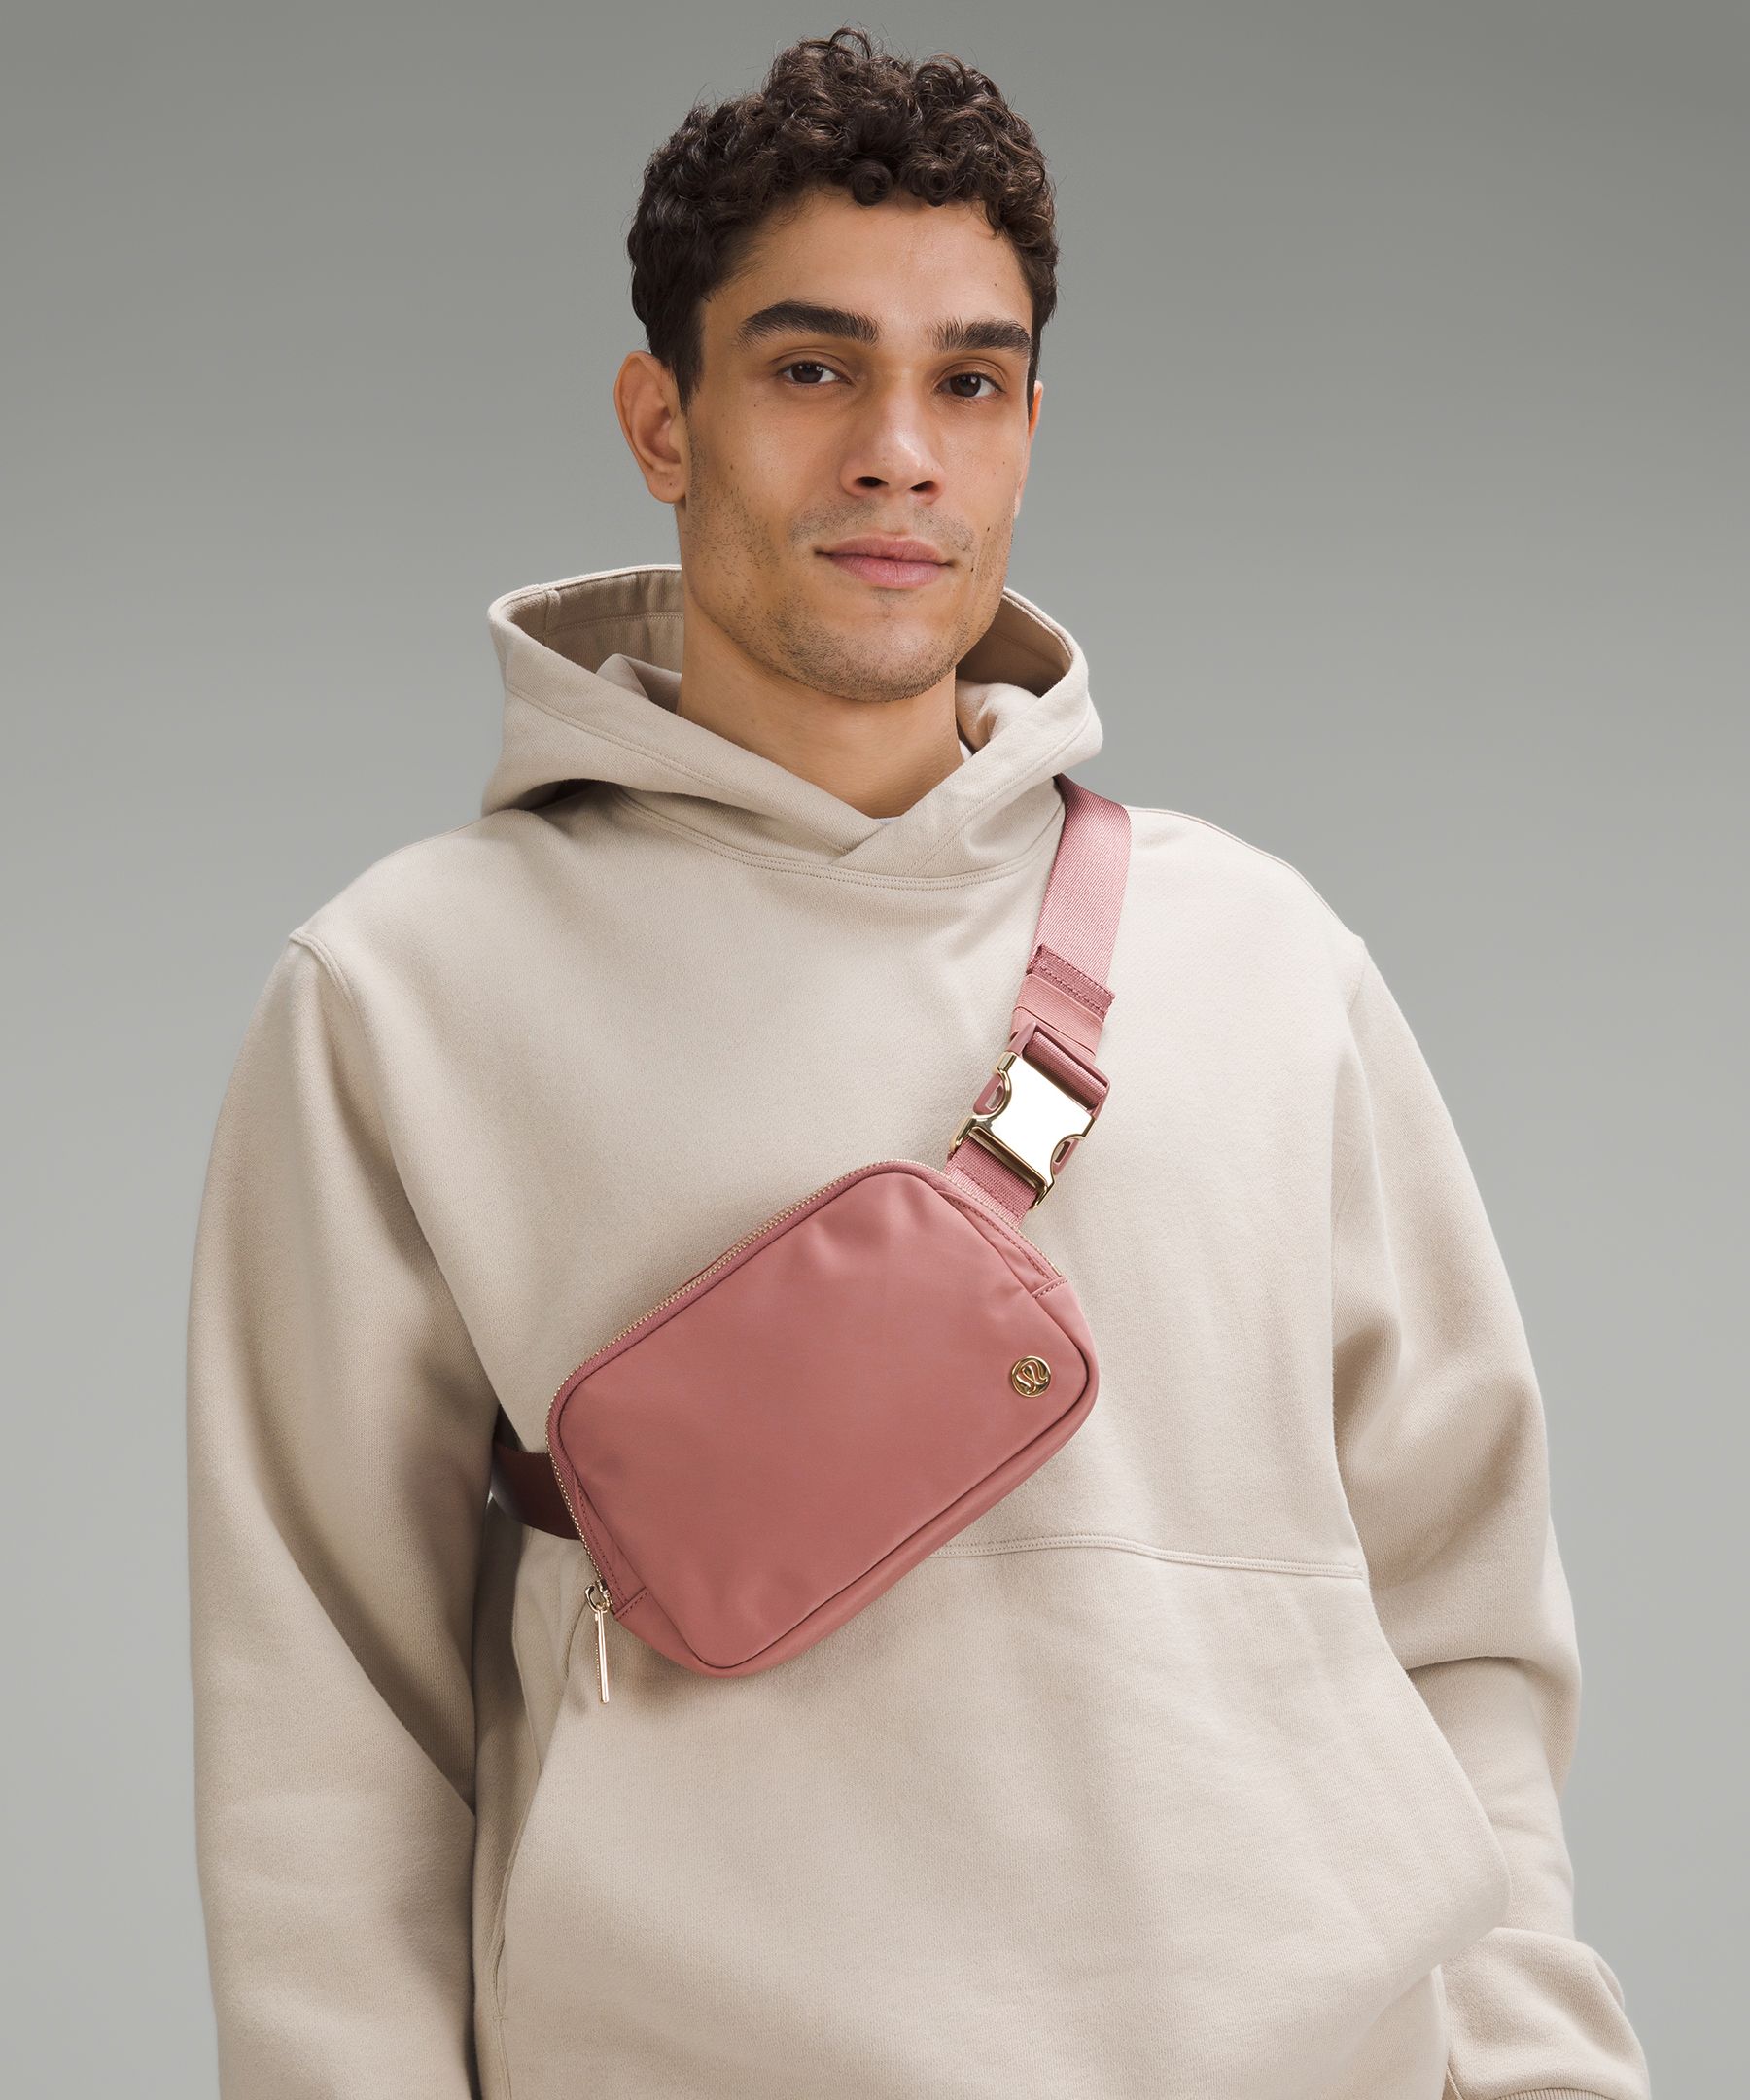 Kitsmall] Lululemon Adjustable Yoga Waistpack Outdoor Running Mobile Phone  Bag Men's and Women's Marathon Equipment Fitness Waistpack Chest Bag